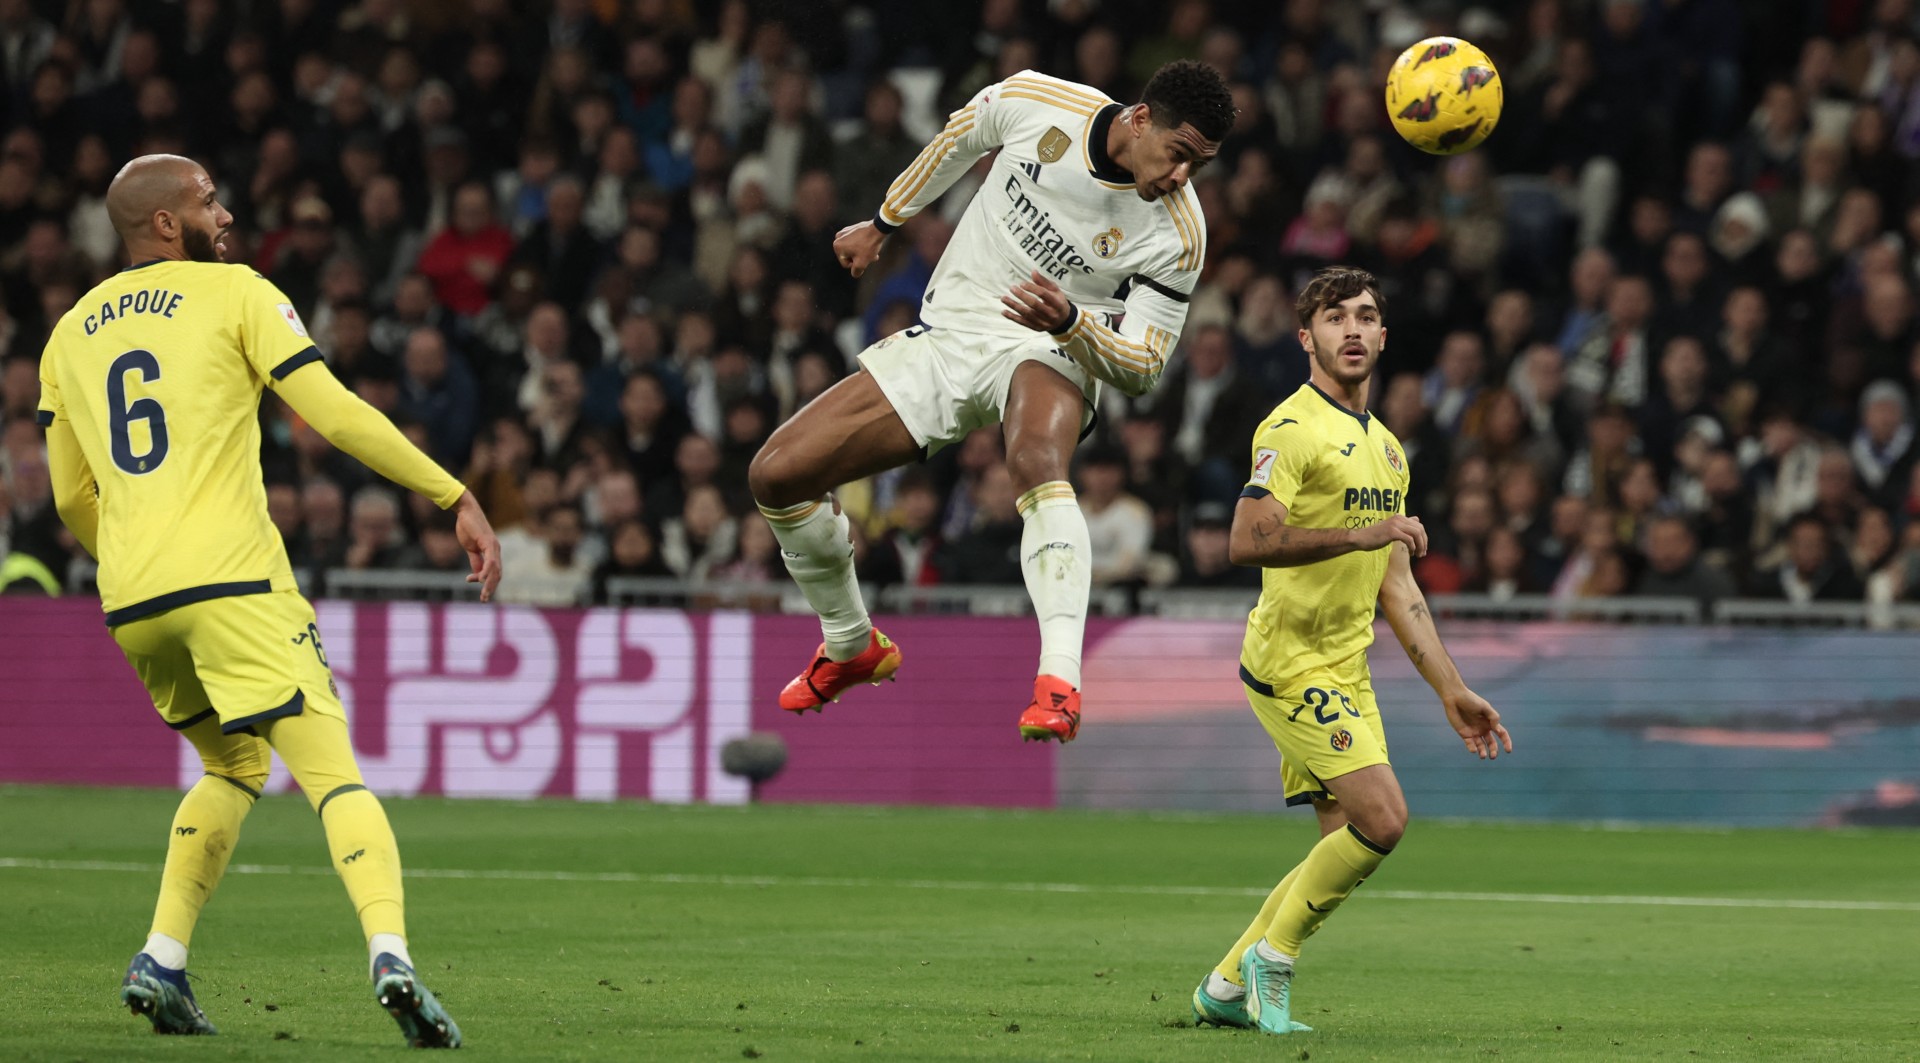 Nâng mach bất bại lên 11 trận, Real Madrid tạm chiếm ngôi đầu La Liga - Ảnh 1.